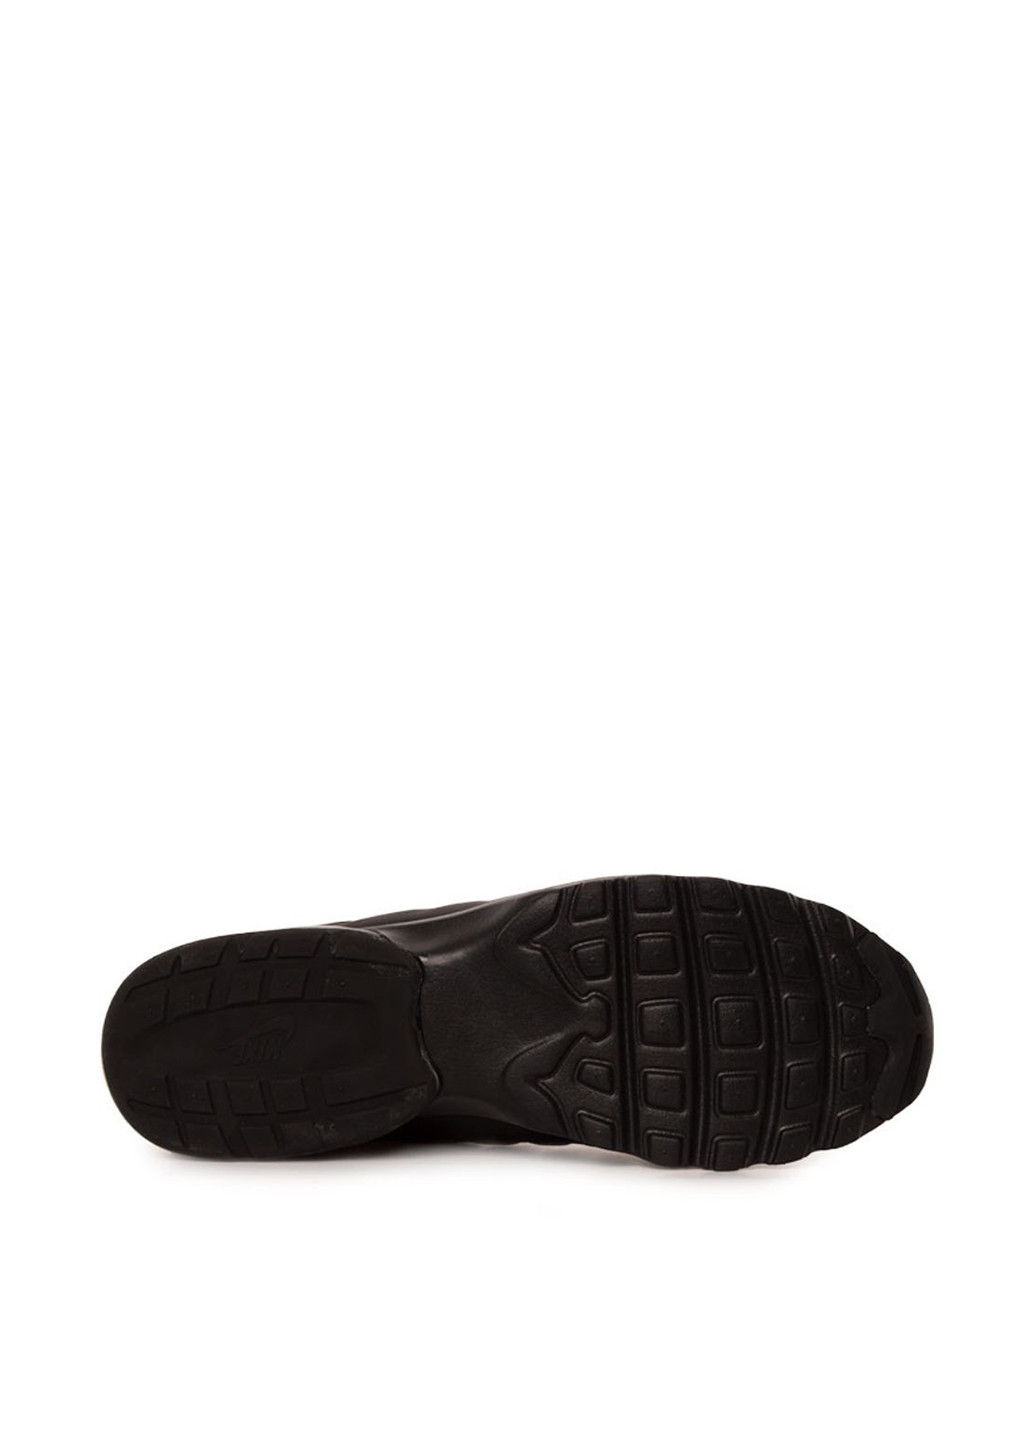 Черные демисезонные кроссовки 749680-001_2024 Nike Air Max Invigor